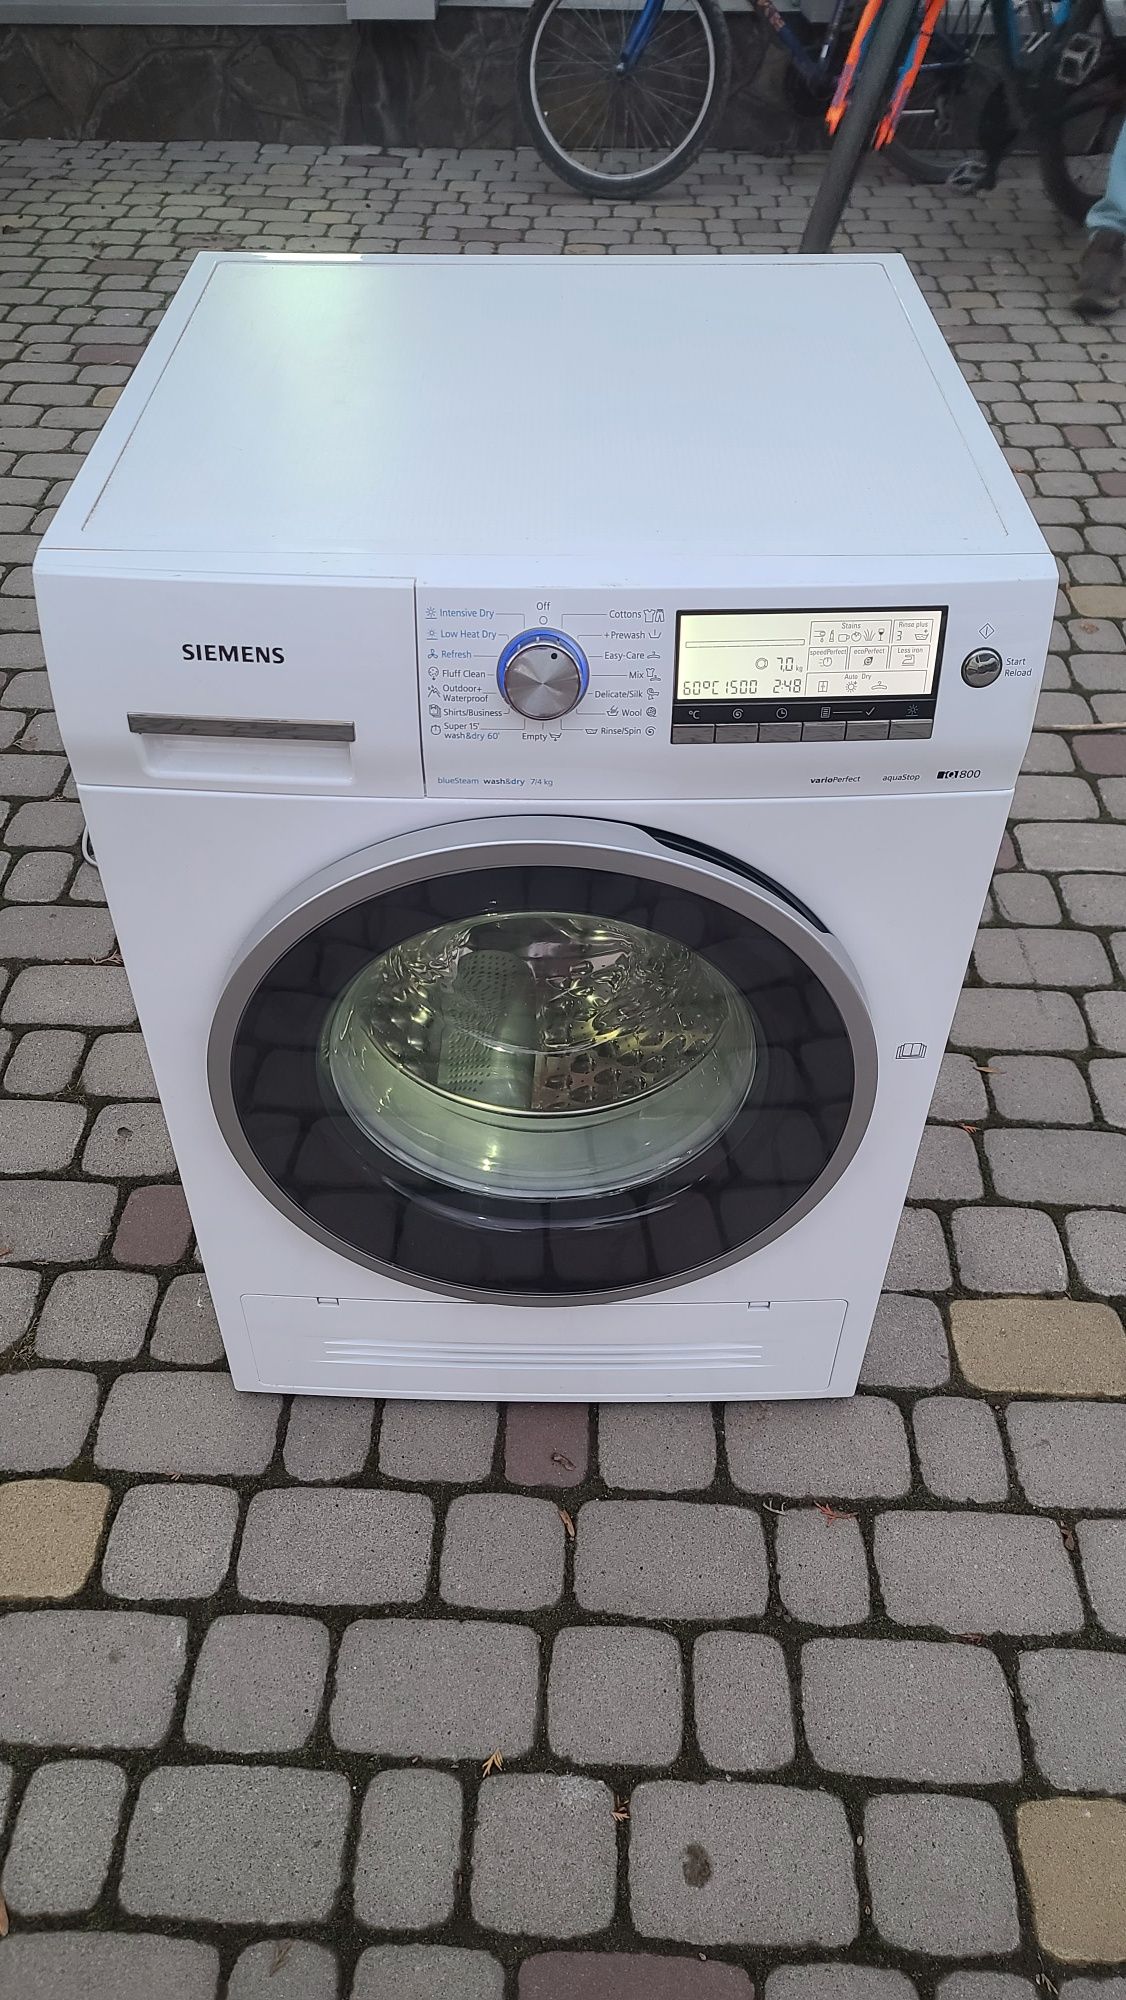 Пральна стиральная машина з сушкою Siemens 7/4Kg